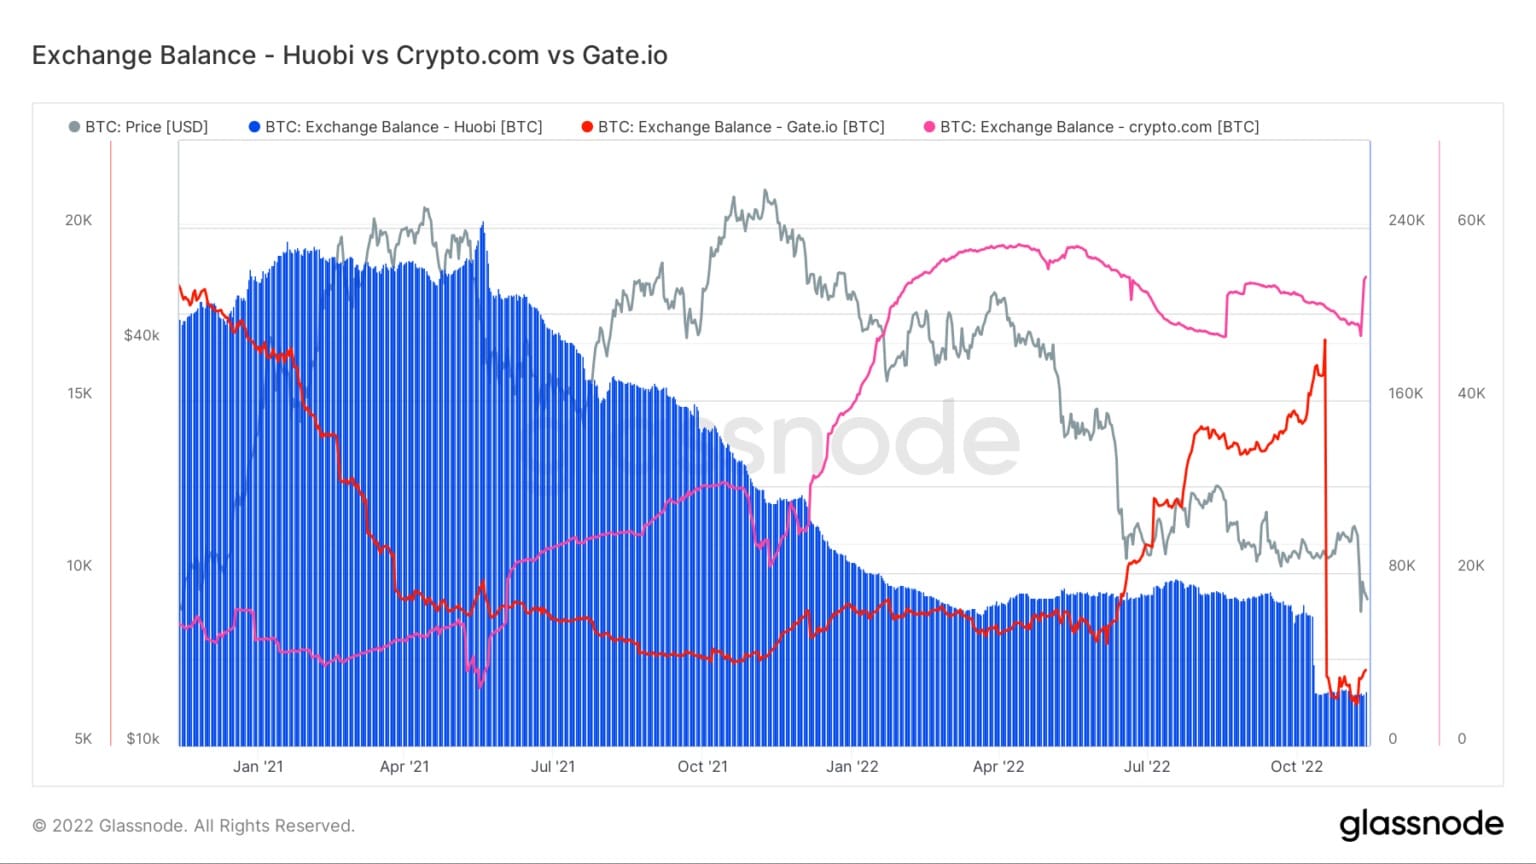 Wykres przedstawiający salda Bitcoinów na Huobi, Crypto.com, oraz Gate.io od stycznia 2021 do listopada 2022 (Źródło: Glassnode)